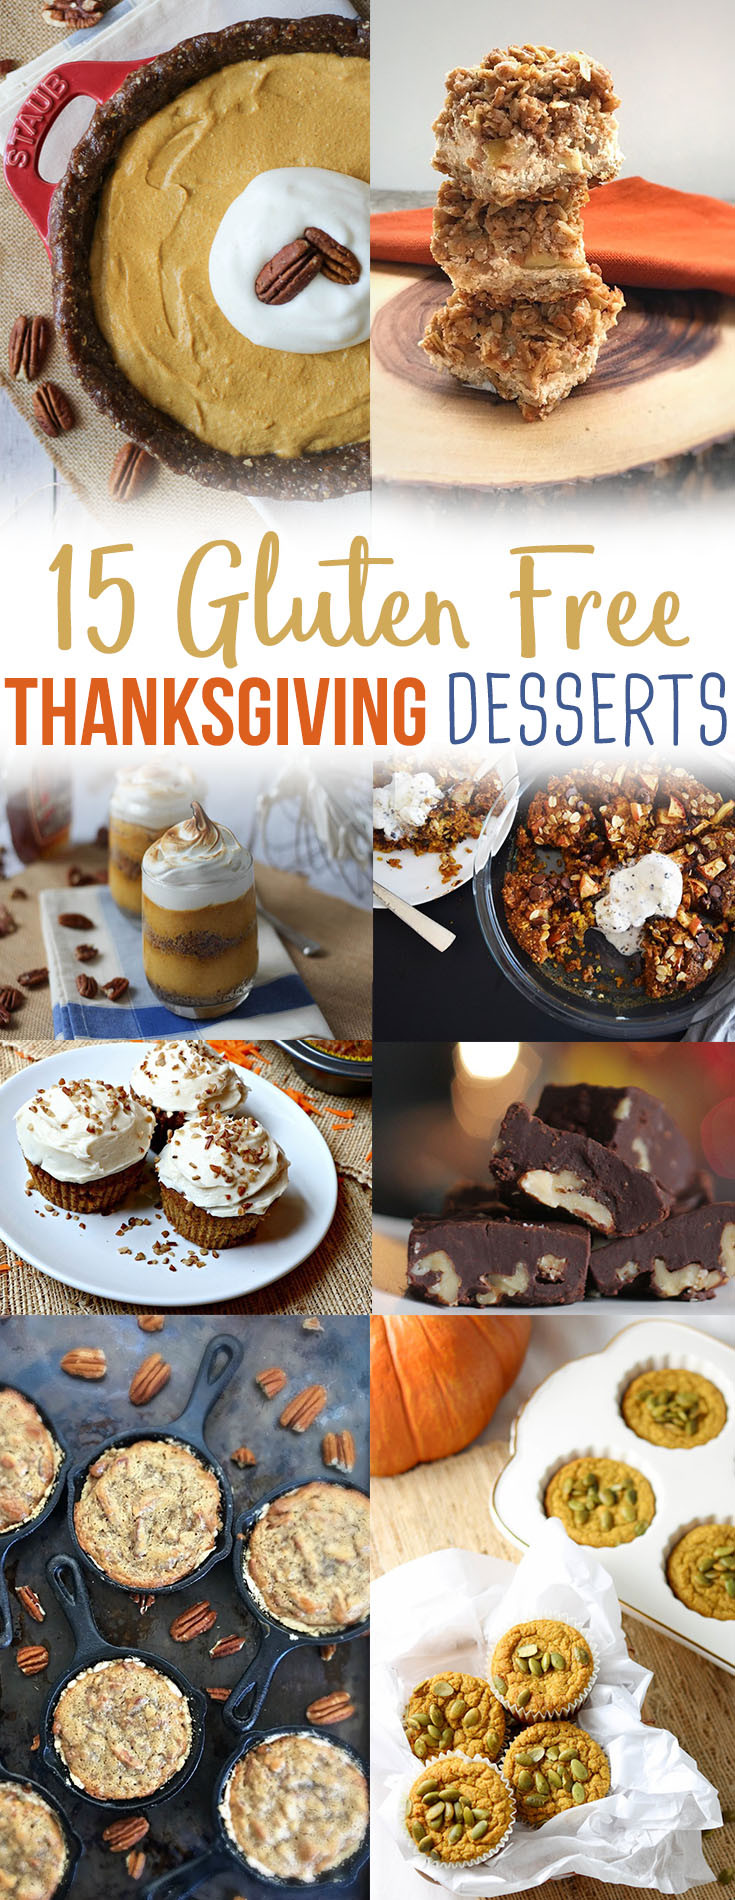 Thanksgiving Gluten Free Desserts
 15 Healthy Gluten Free Thanksgiving Dessert Recipes